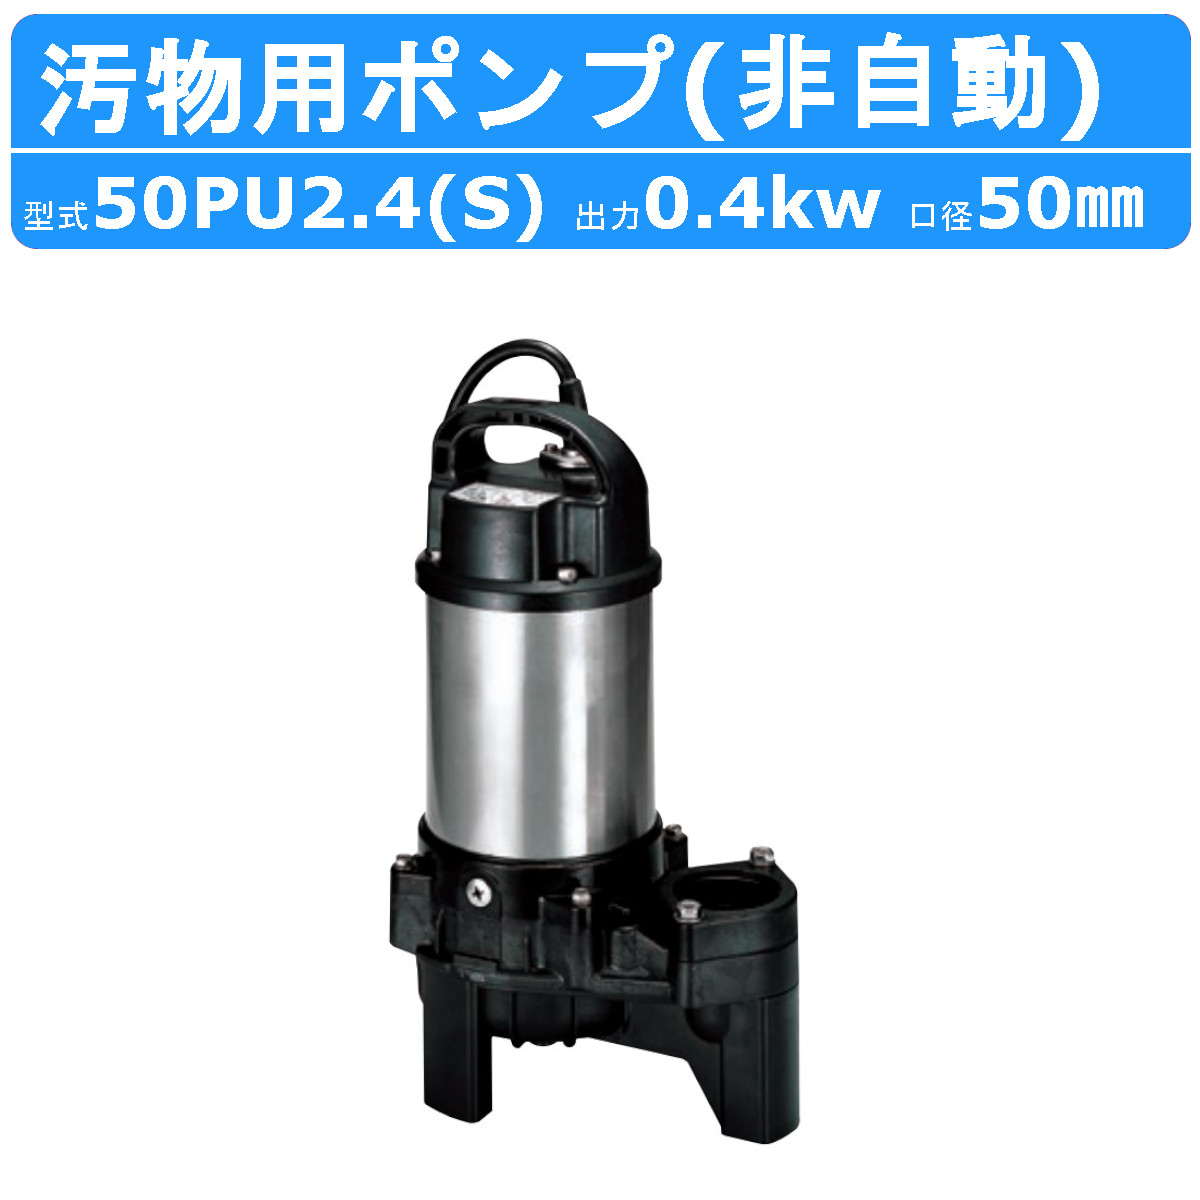 ツルミ 汚物用 水中ポンプ 50PU2.4S / 50PU2.4 バンクスシリーズ 